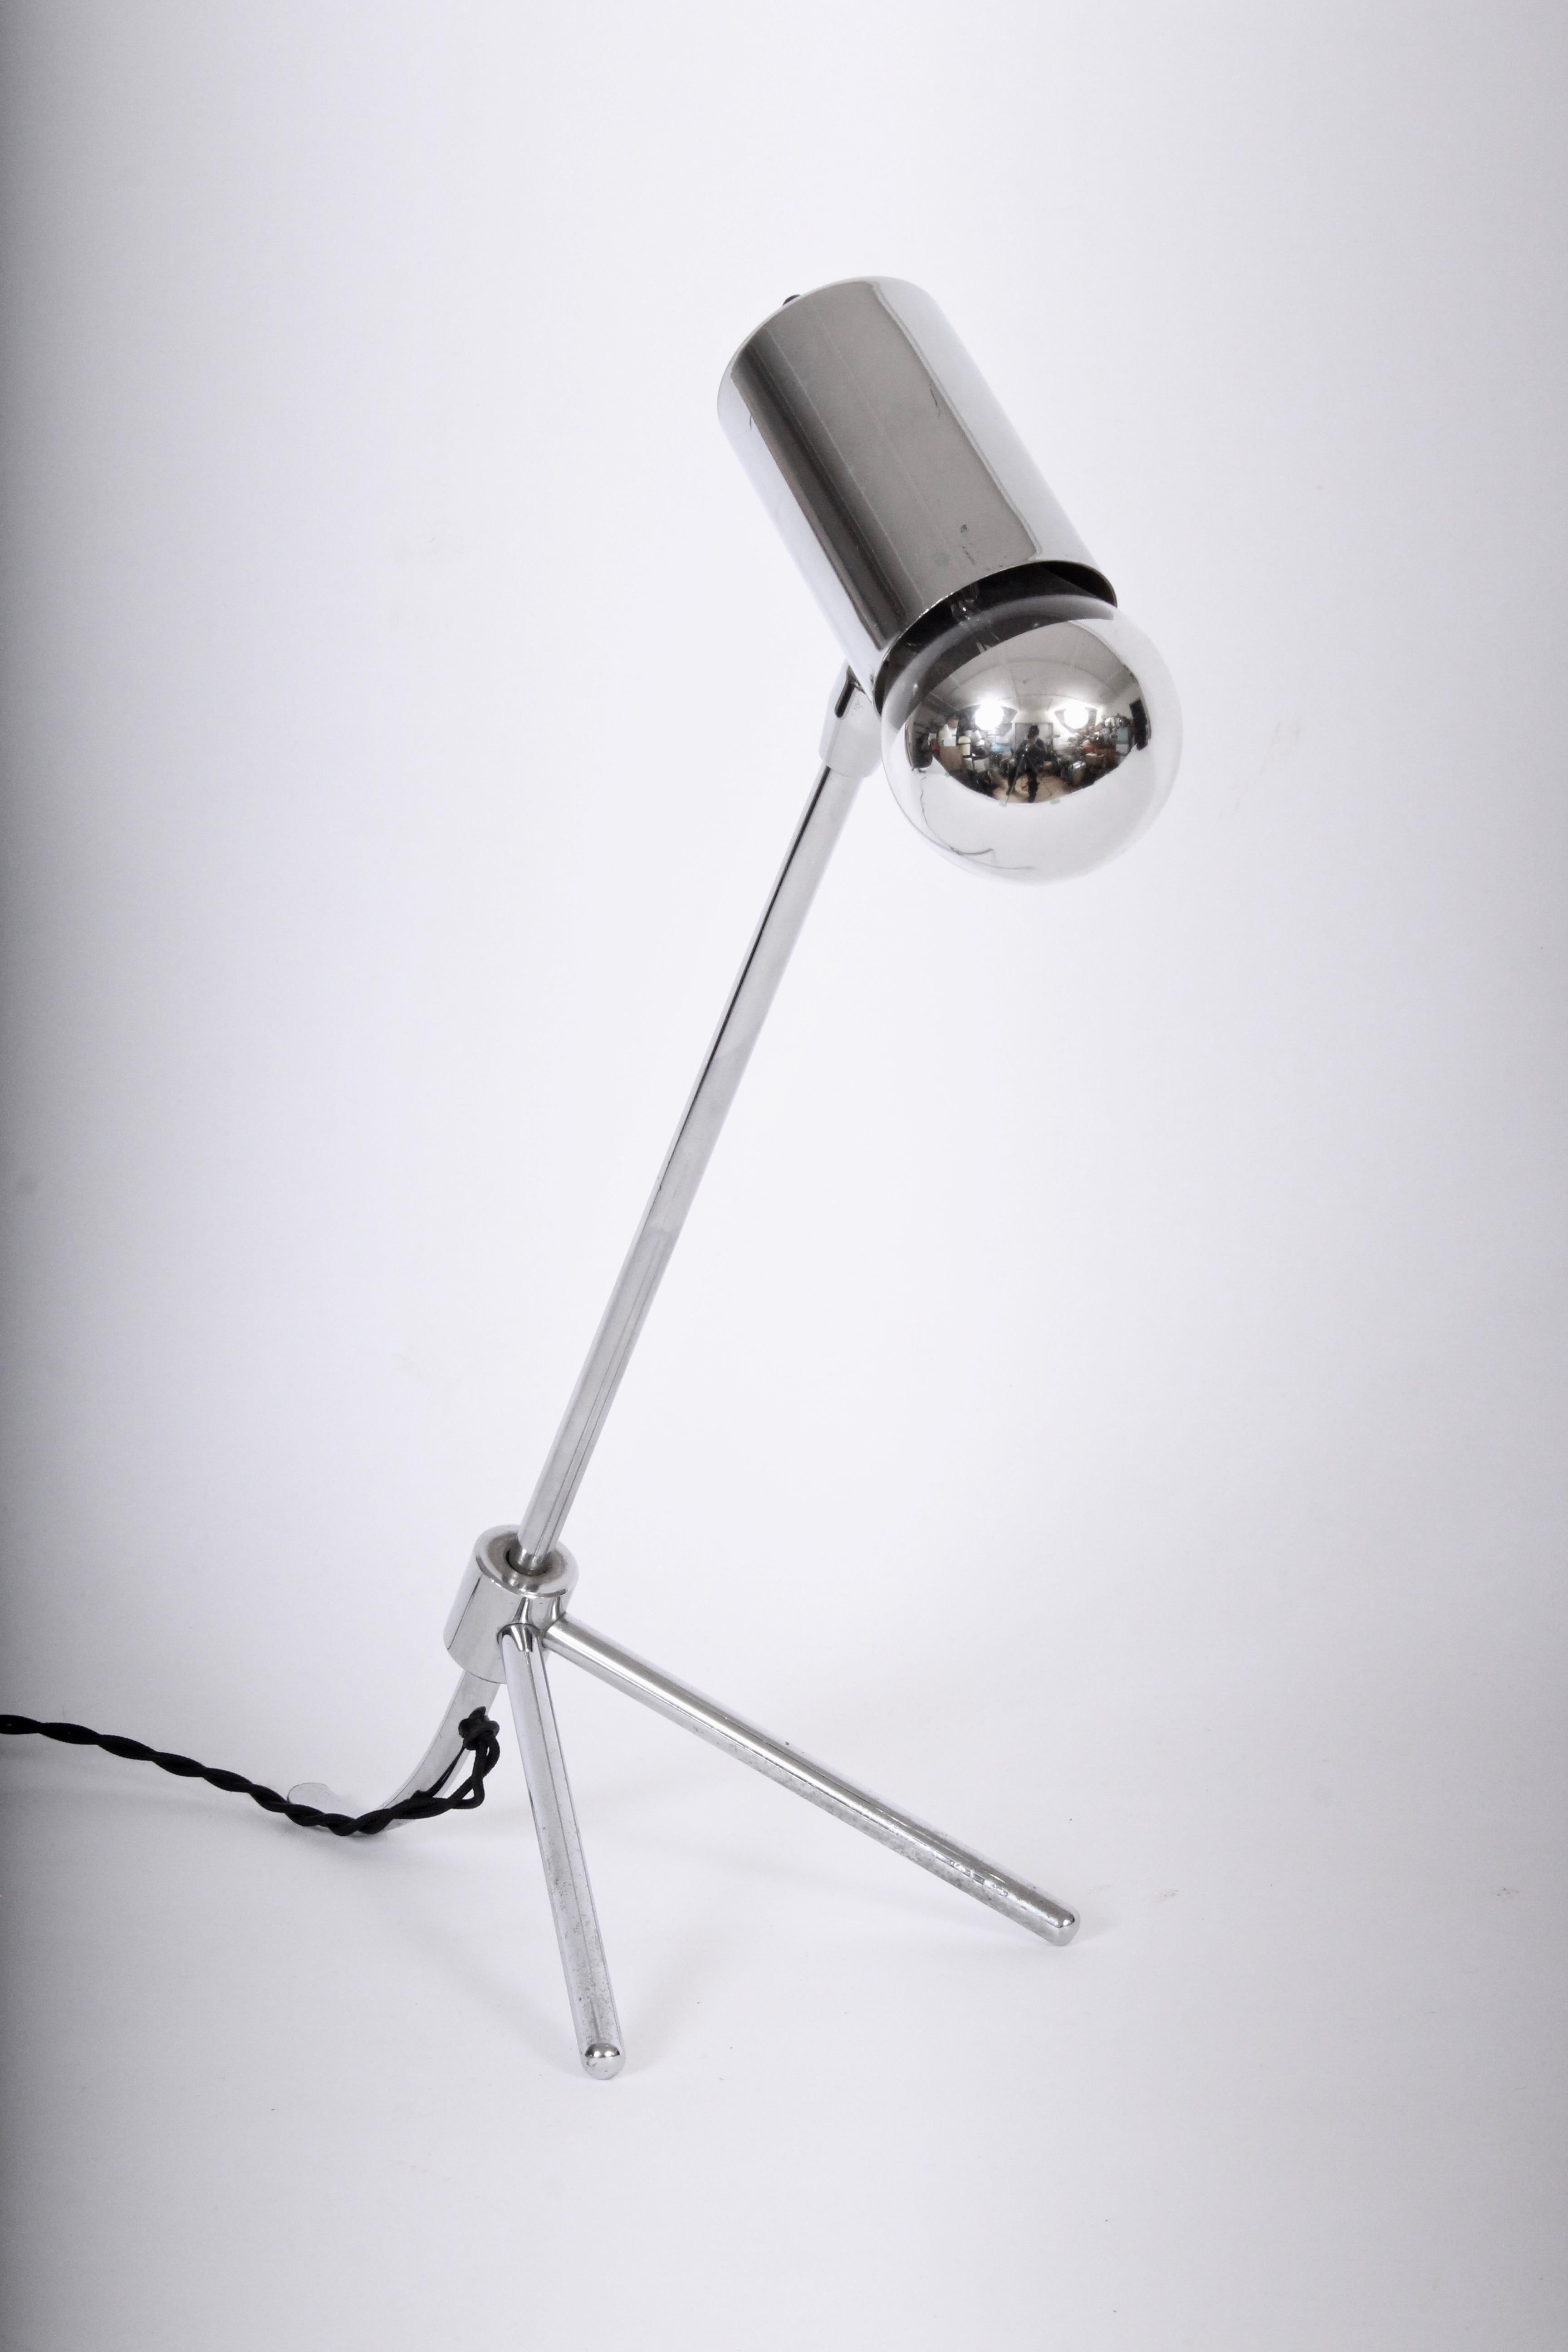 Petite lampe de table tripode moderniste en nickel, à la manière de Jean Boris Lacroix, années 1960. Positions réglables, douille de taille standard, avec une ampoule ronde en verre de Mercure. Qualité supérieure. Finition soignée. Design